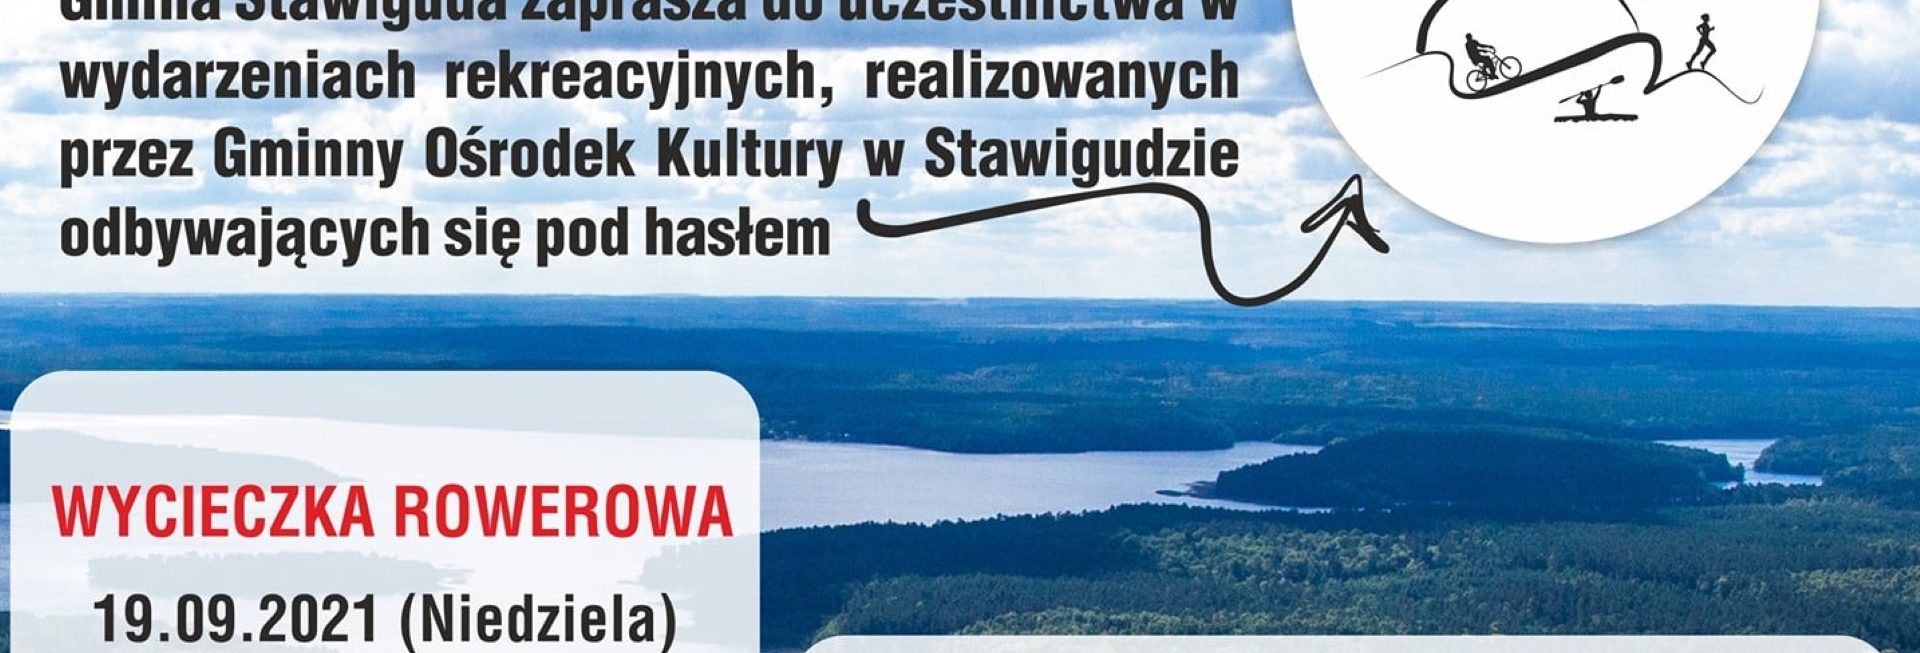 Plakat graficzny zapraszający do Bartąga na wycieczkę rowerową szlakami Gminy Stawiguda 2021.